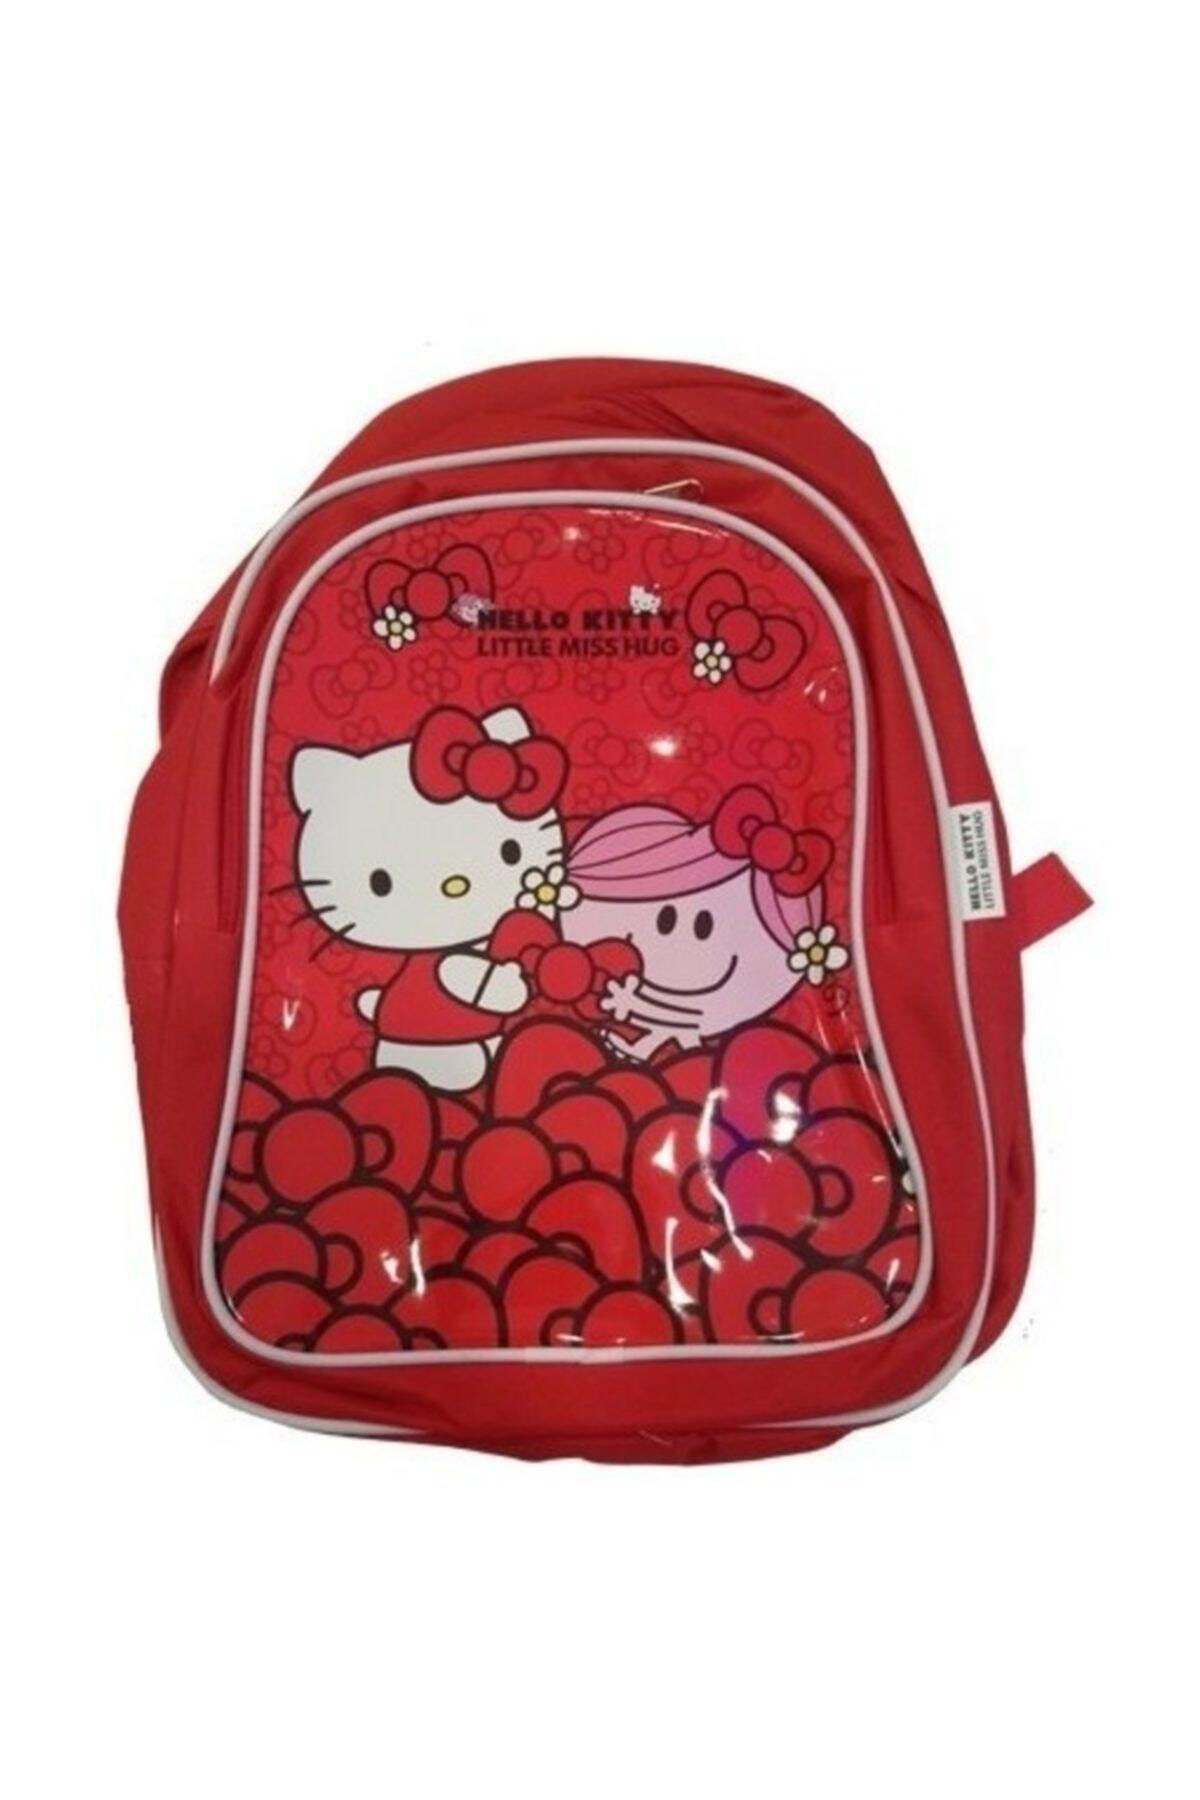 Hakan Çanta Hteks Hello Kitty Lisanslı Ekonomik Okul Çantası 89966